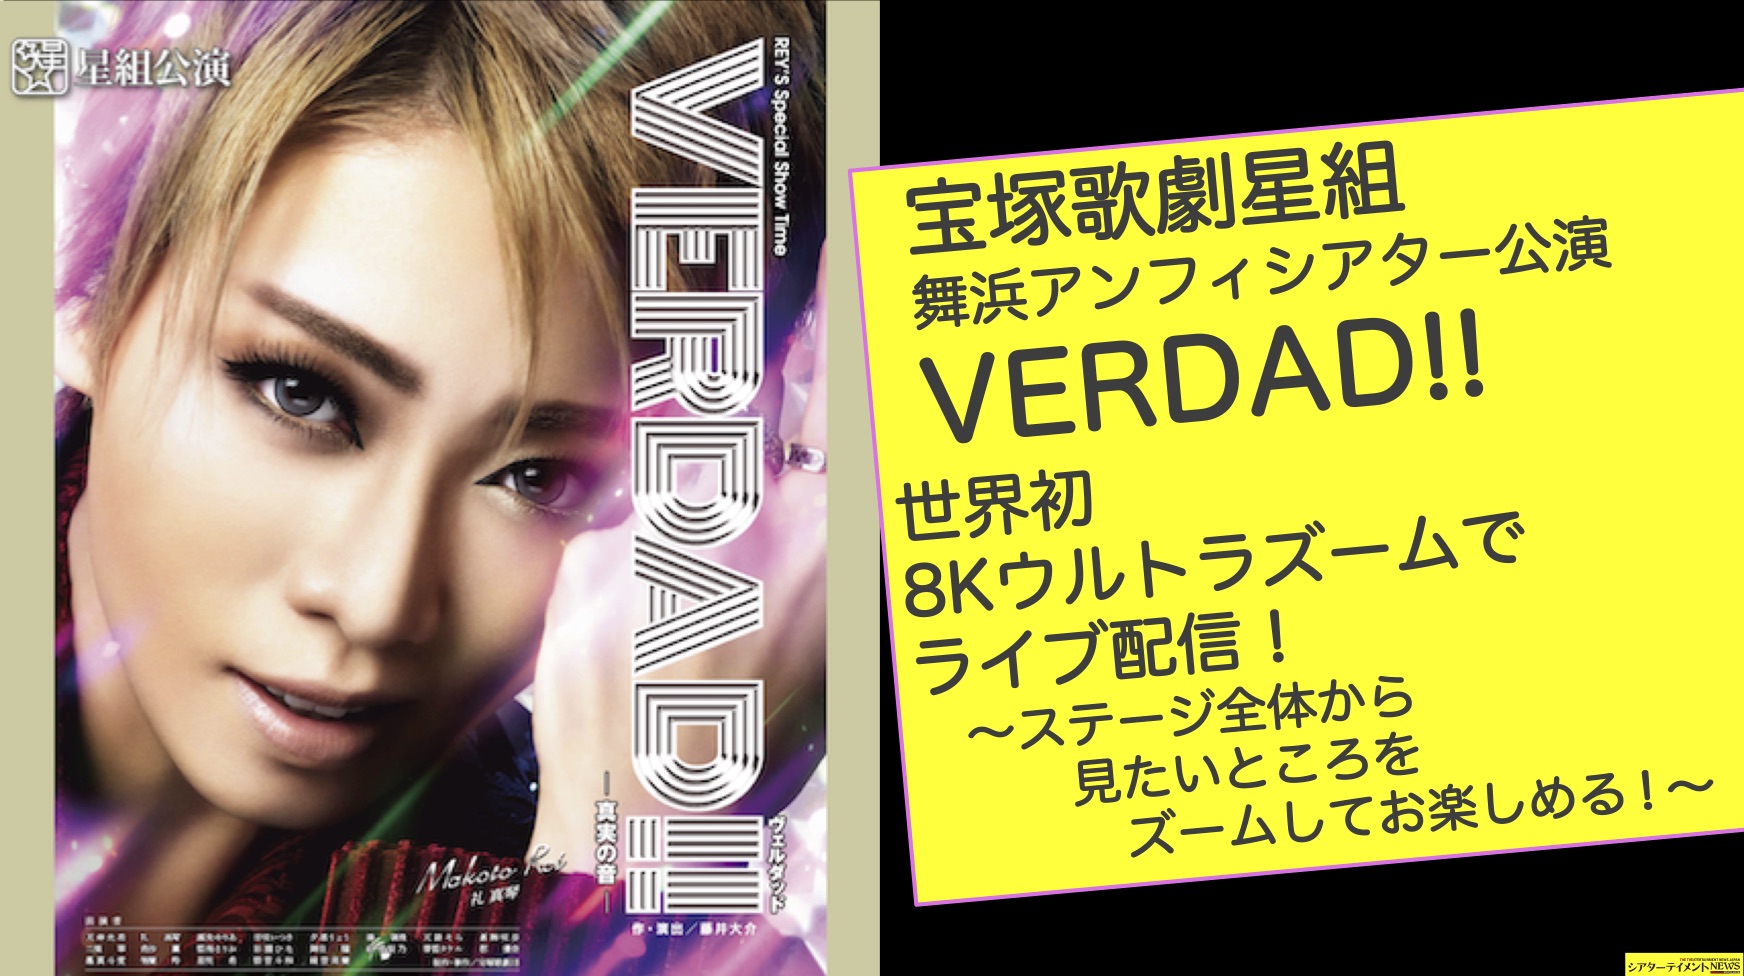 宝塚歌劇星組 舞浜アンフィシアター公演「VERDAD!!」を世界初の8K 